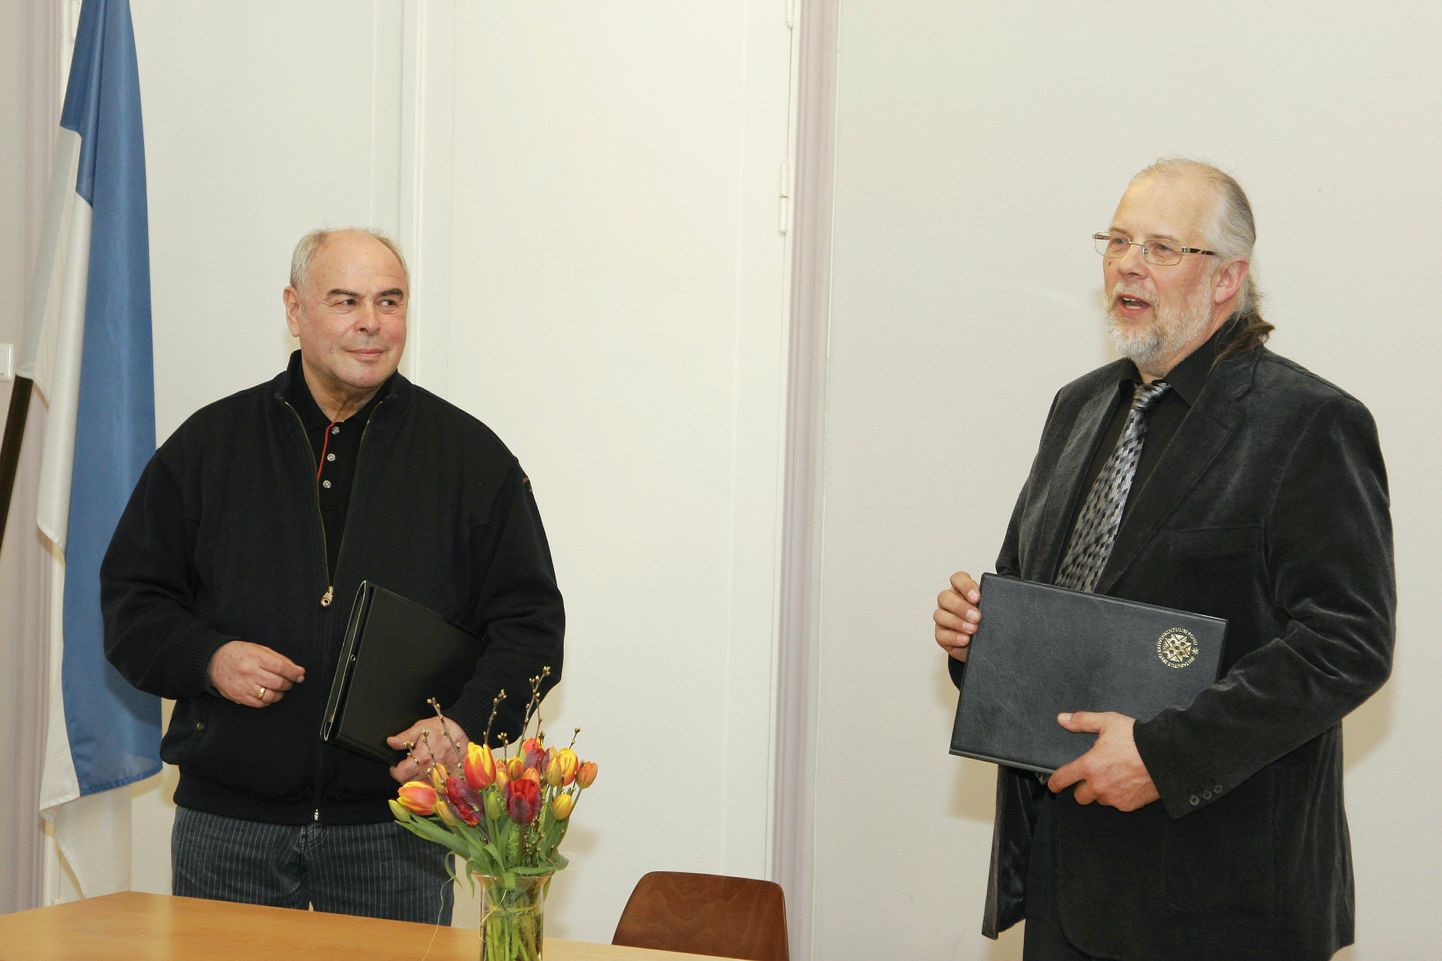 Eesti rahvuskultuuri fondi esimees Eri Klas ja Ülo Krigul kirjutasid alla dokumentidele, millega loodi fond Viljandi juurtega muusikute toetamiseks.